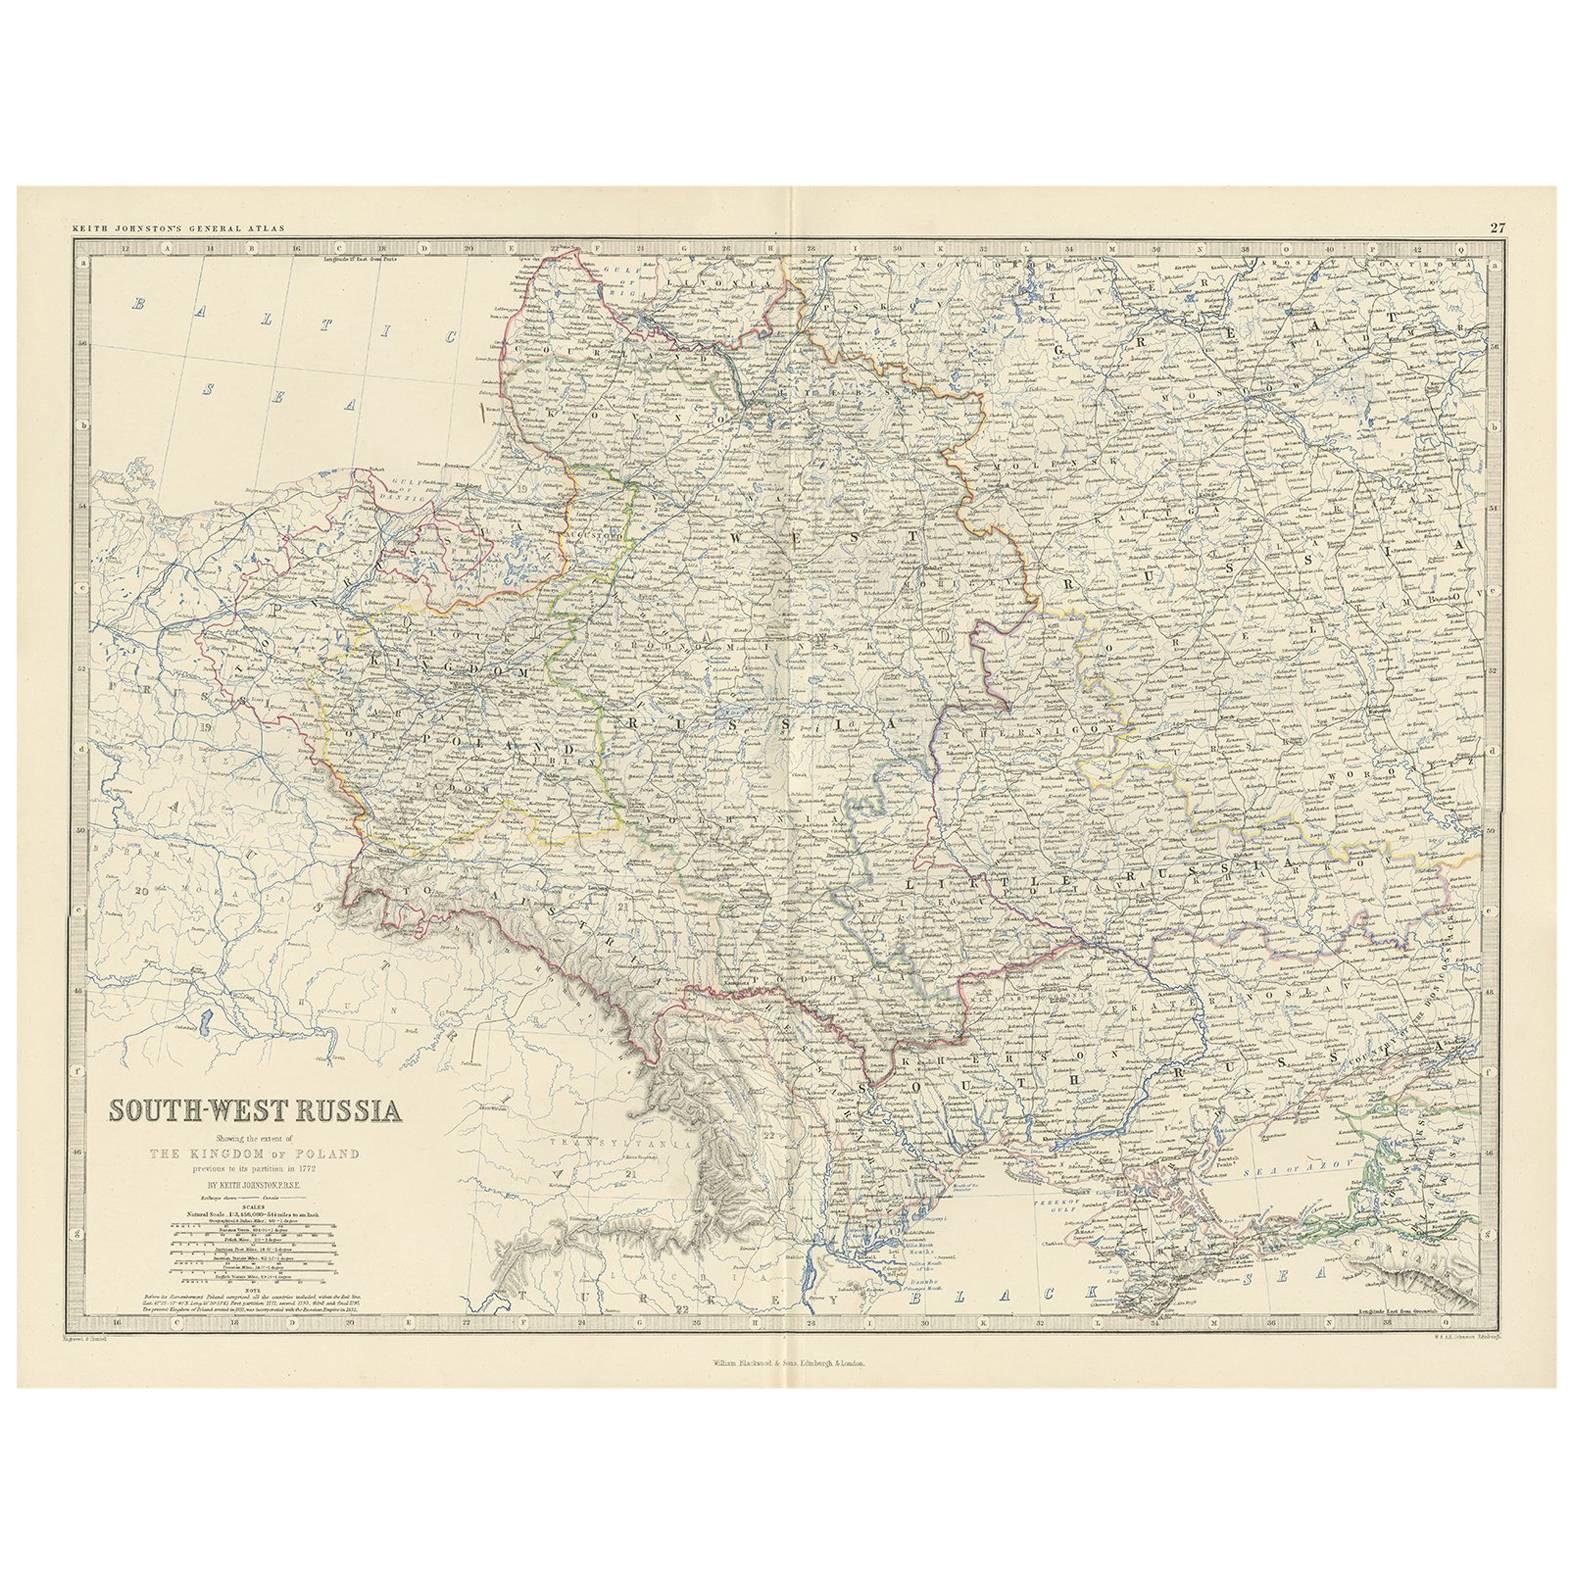 Carte ancienne de la Russie du Sud-Ouest par A.K. Johnston, 1865